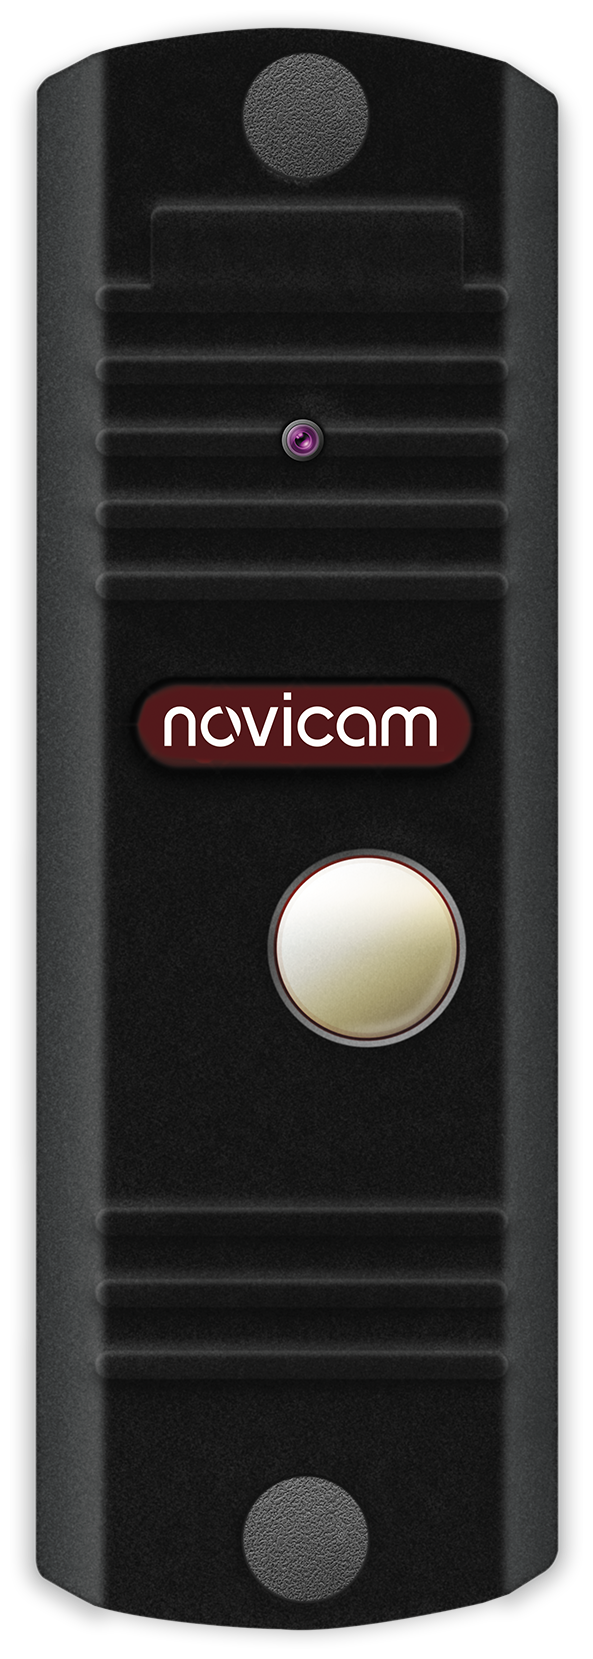 LEGEND BLACK Novicam v.4489 - вызывная панель; аналоговая : 700 ТВЛ, обзор 95°, ИК 3м; реле Н. Р./Н. З IP66; питание DC 12-15В